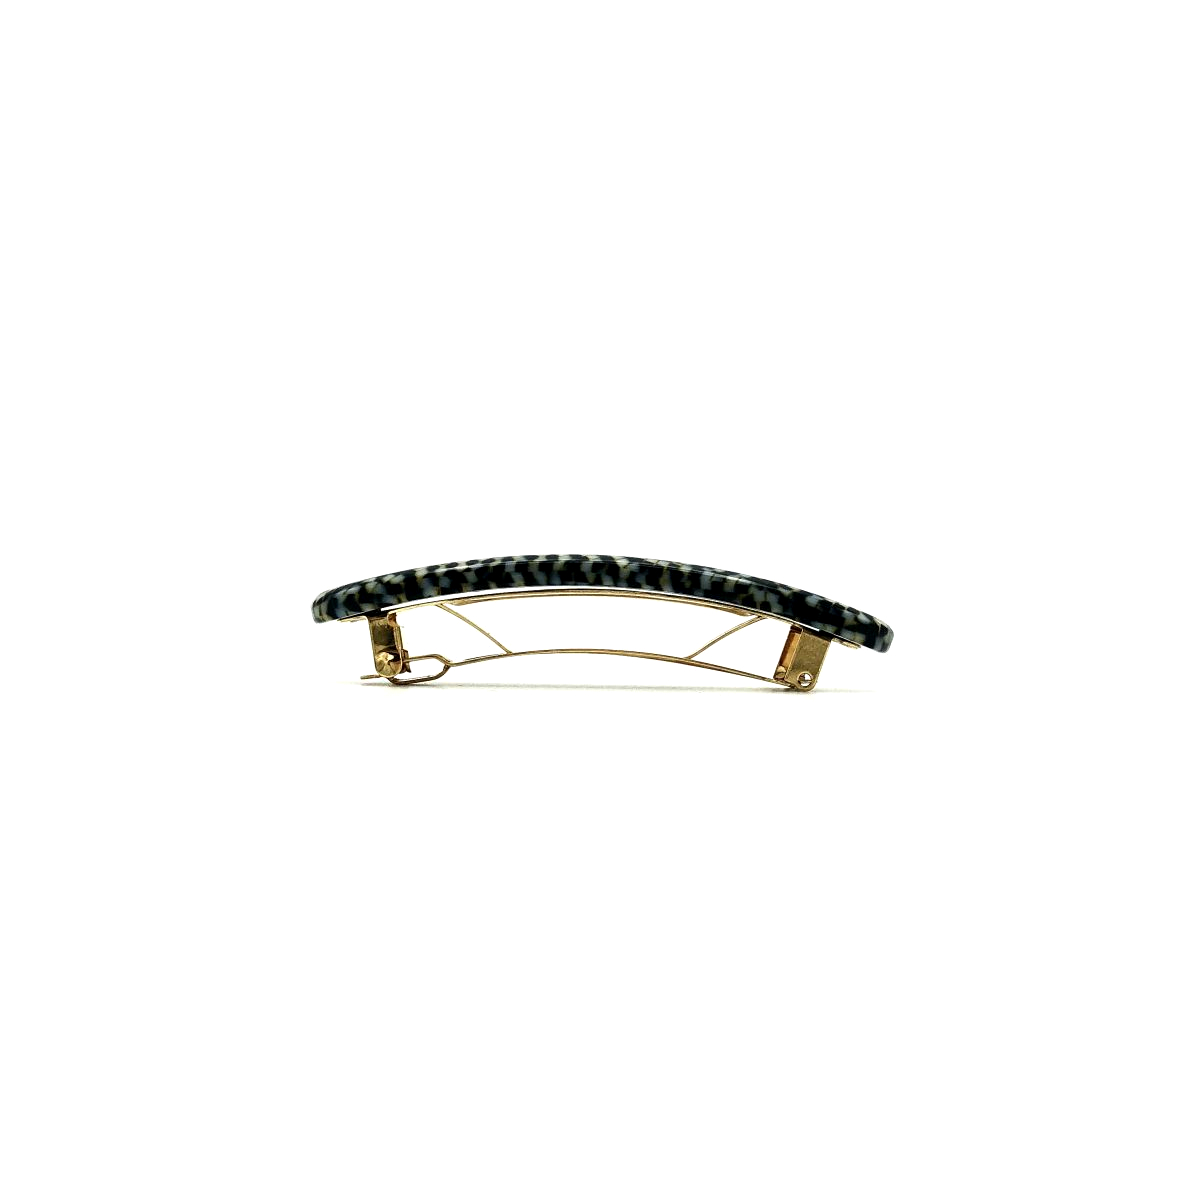 Haarspange silbergrau/schwarz  - klein, paralleloval - 7,7 cm